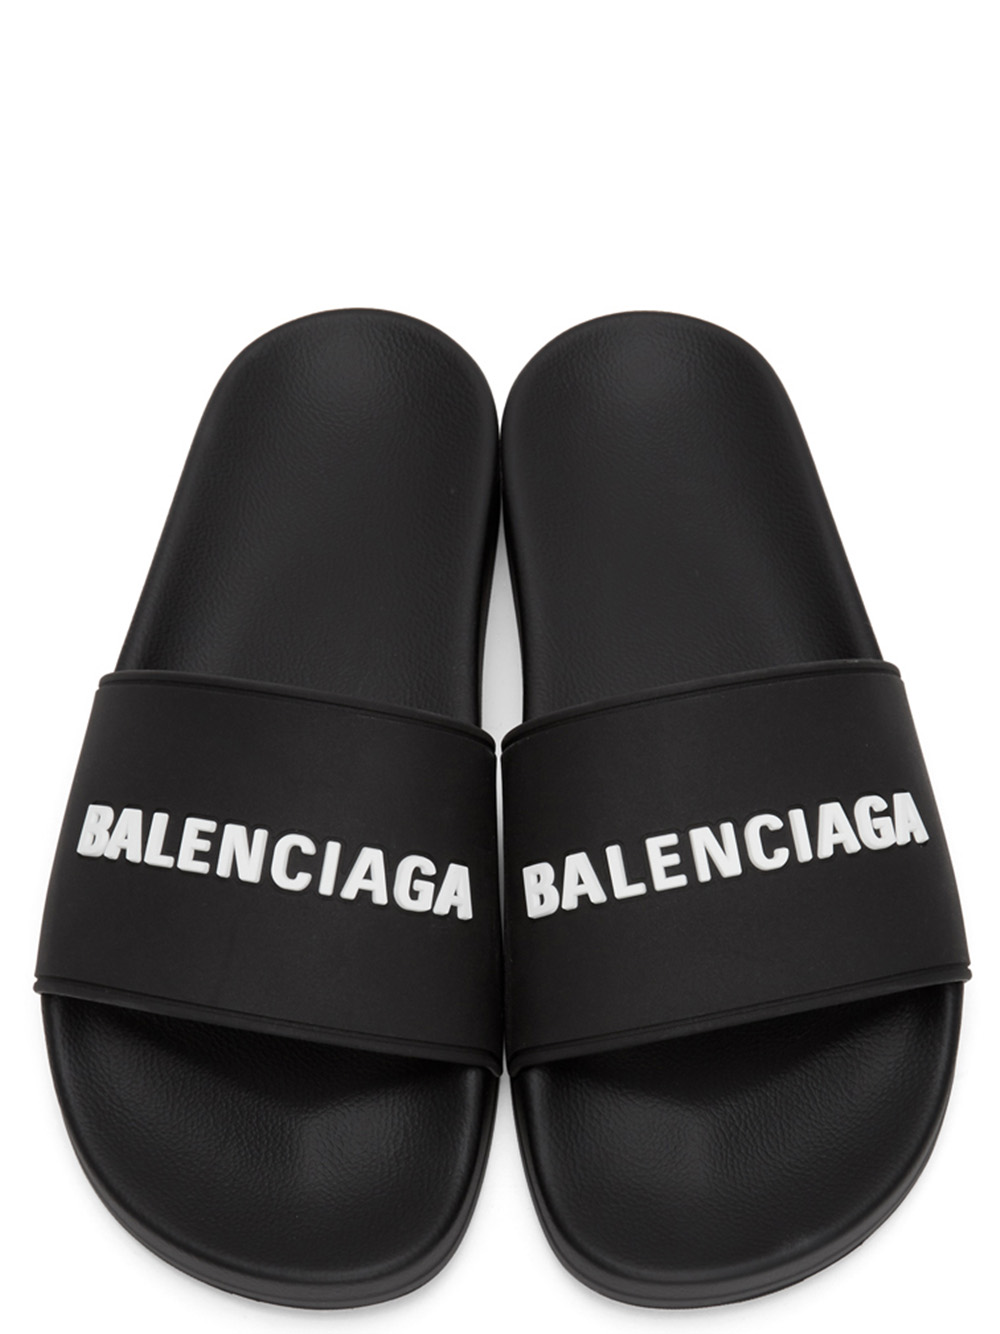 Dép Balenciaga nam màu đen chữ trắng DBL01 siêu cấp  TheK2Deluxe